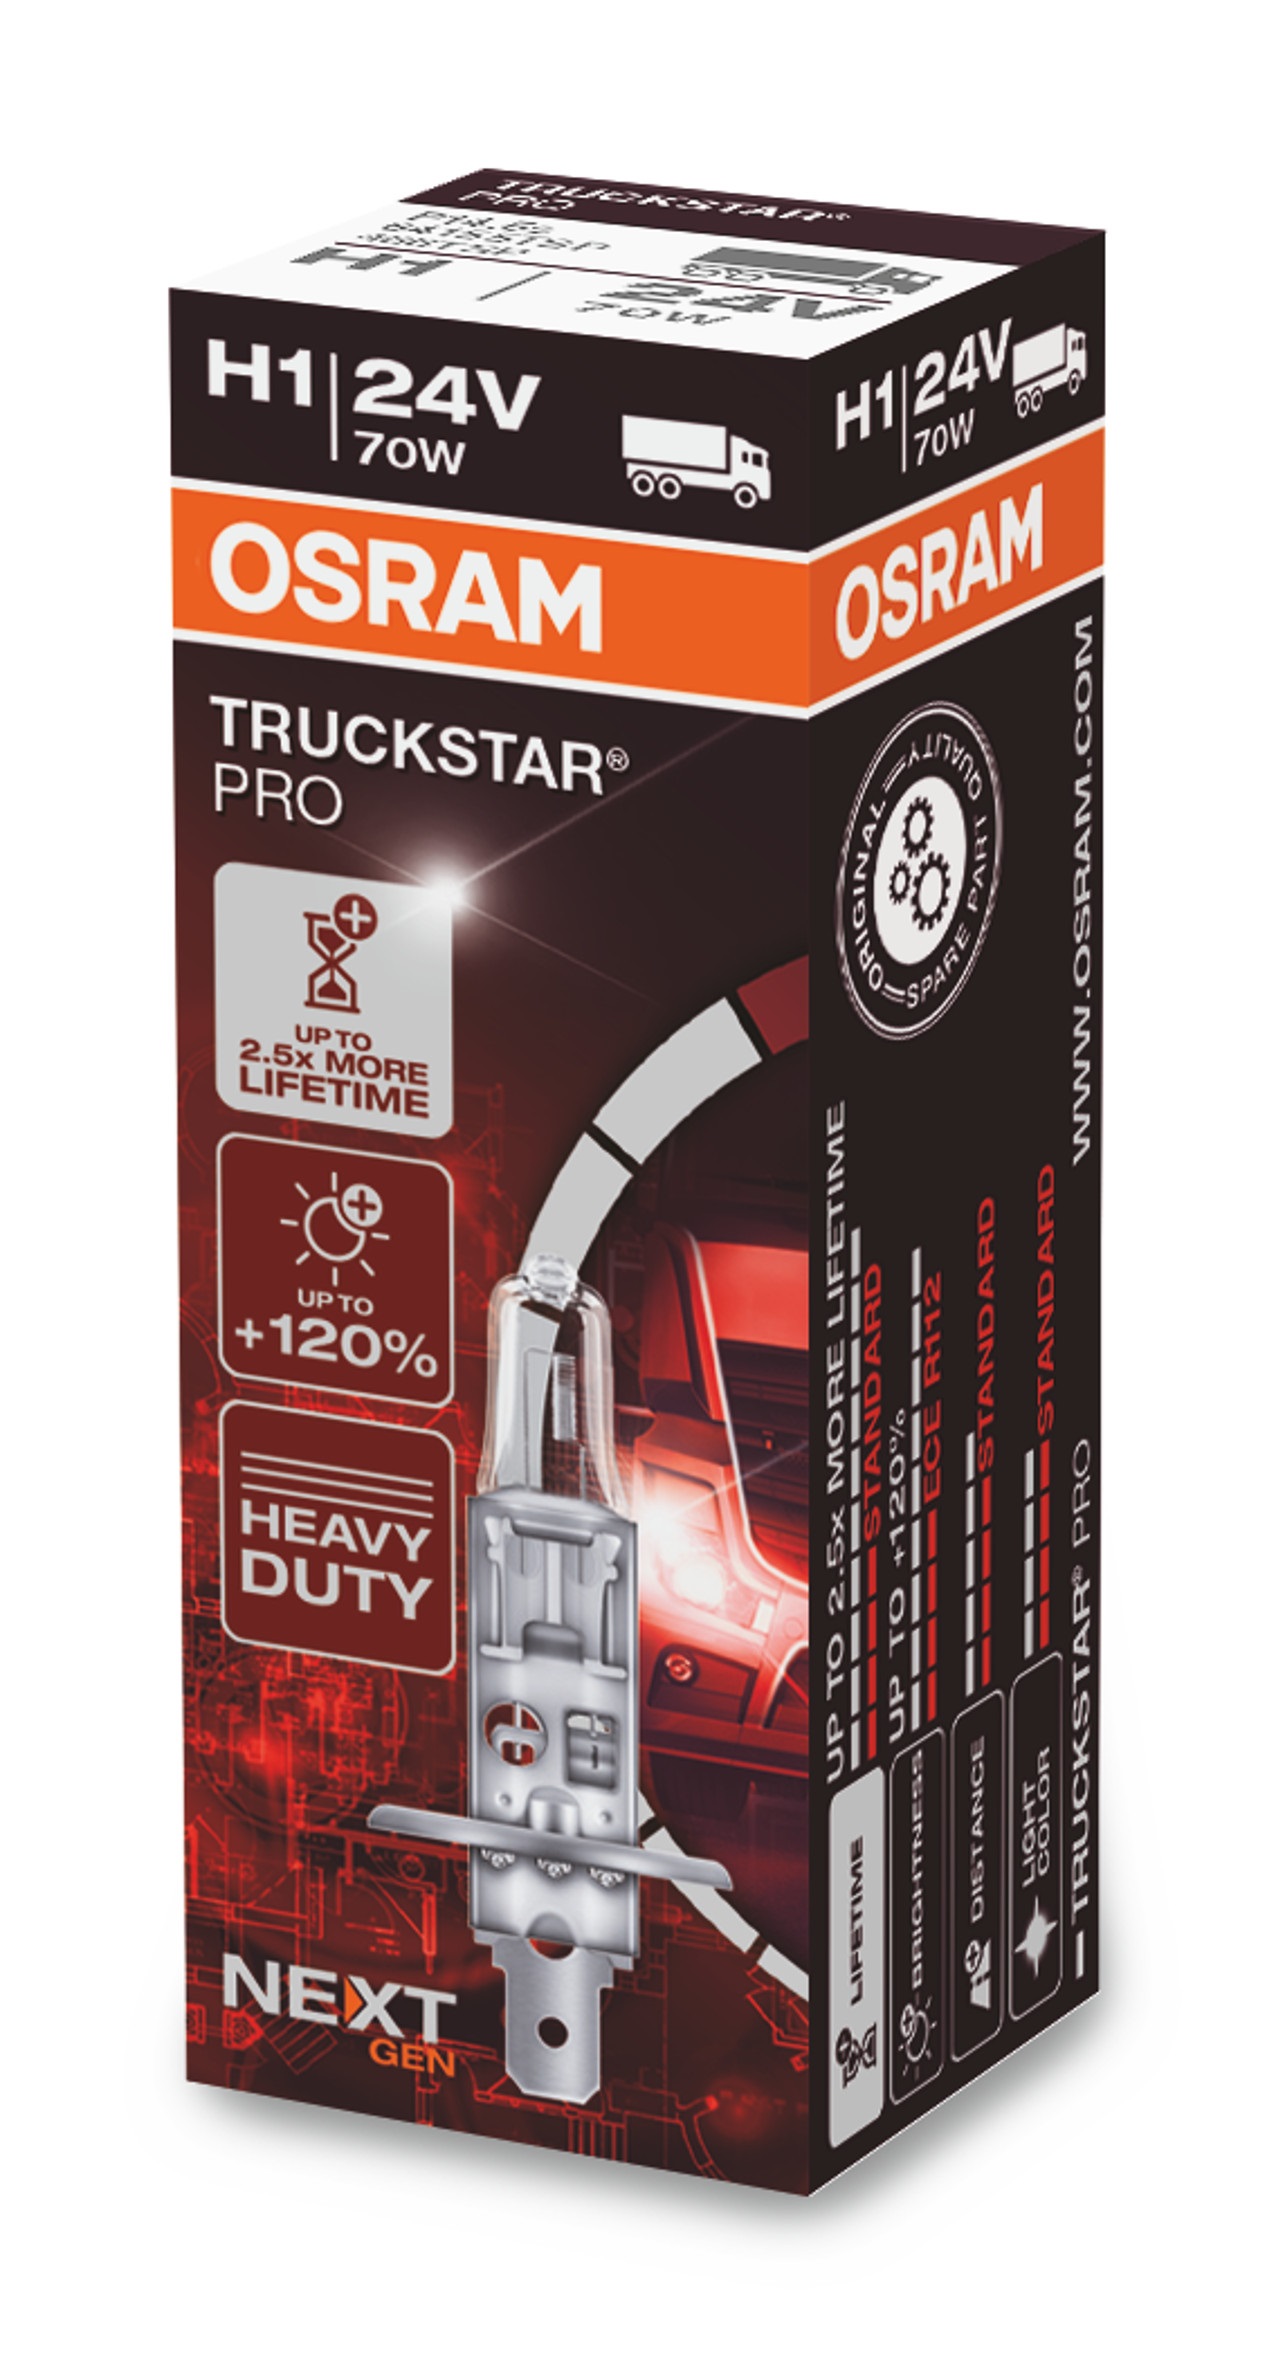 OSRAM Truck Star Pro H1 24 V, 1 Stück von Osram